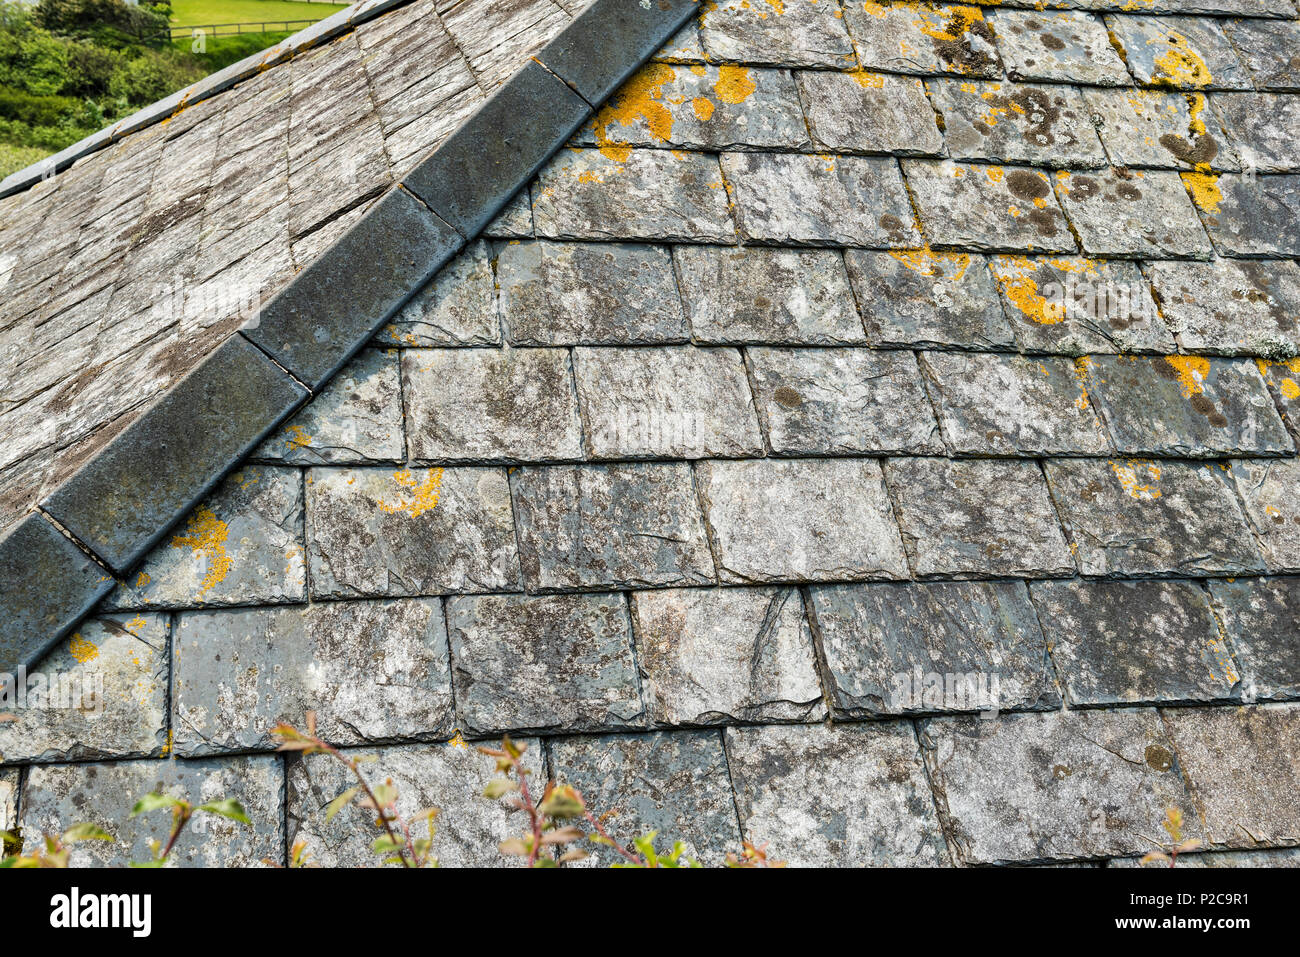 Chiudere la sezione di ardesia del tetto dell'anca. Vecchio tetto in Cornovaglia che mostra la crescita di licheni e muschi. Foto Stock